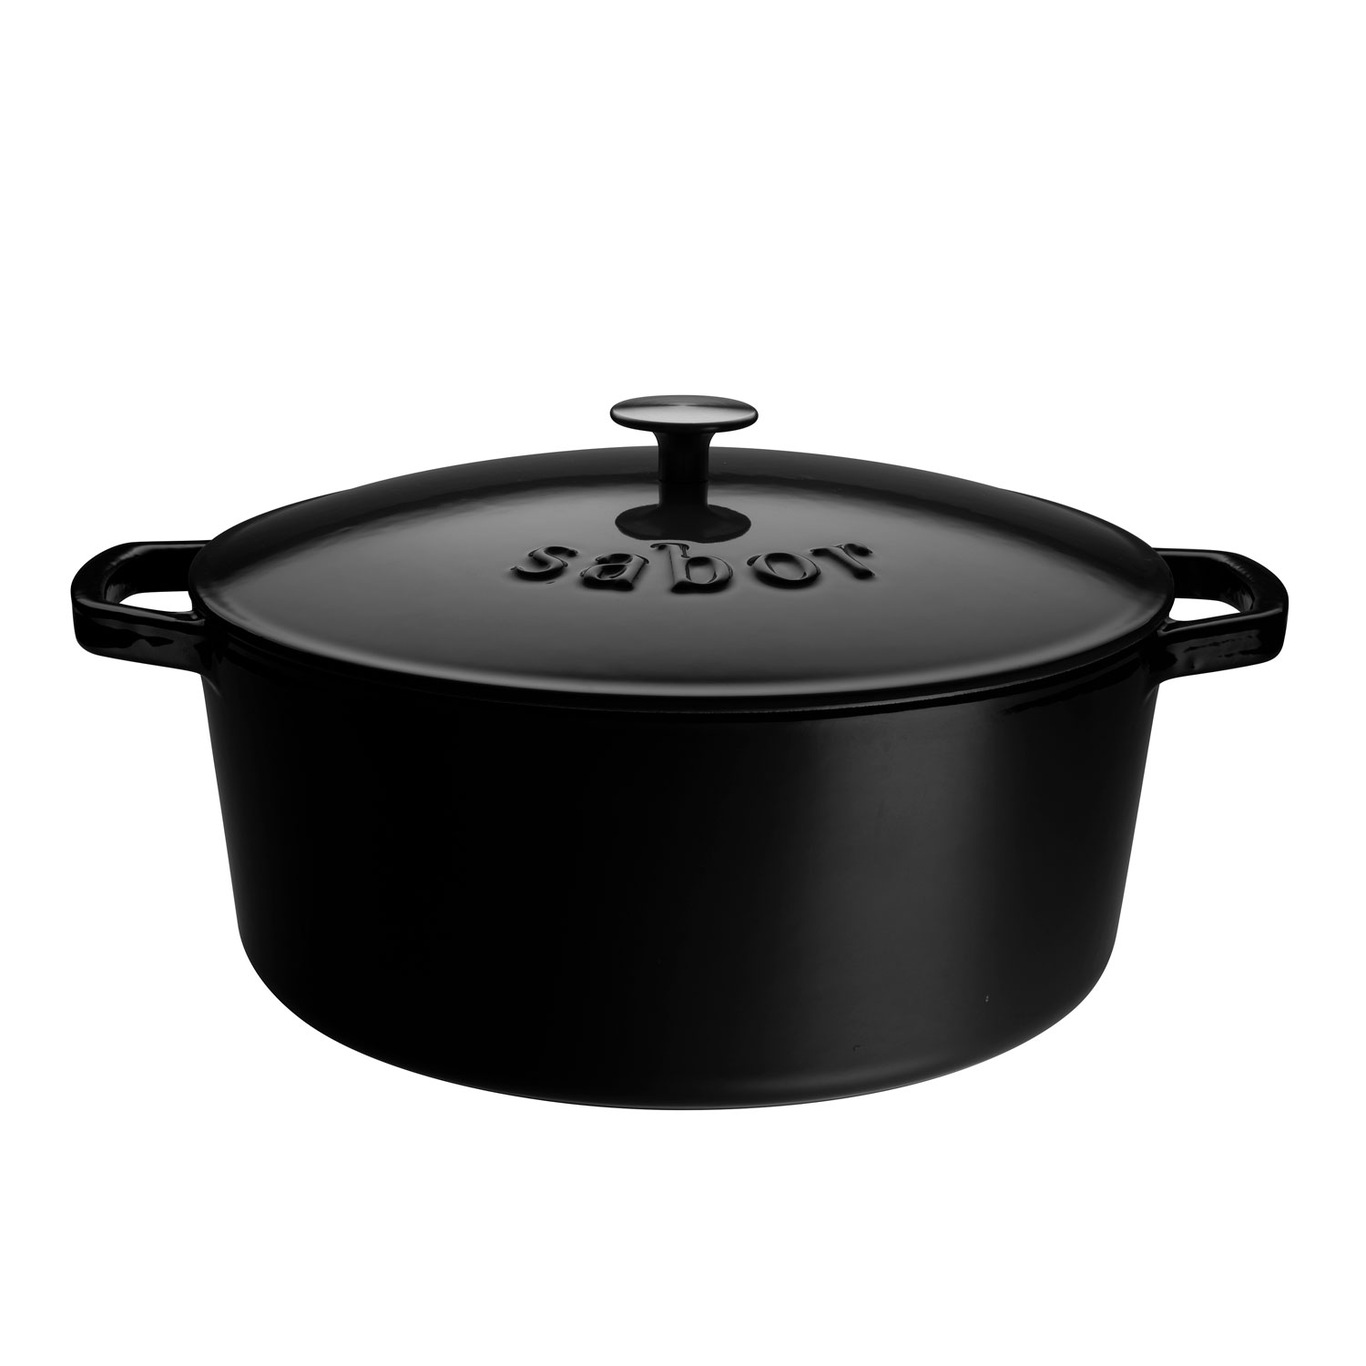 https://royaldesign.com/image/2/sabor-cast-iron-pot-95-l-4?w=800&quality=80